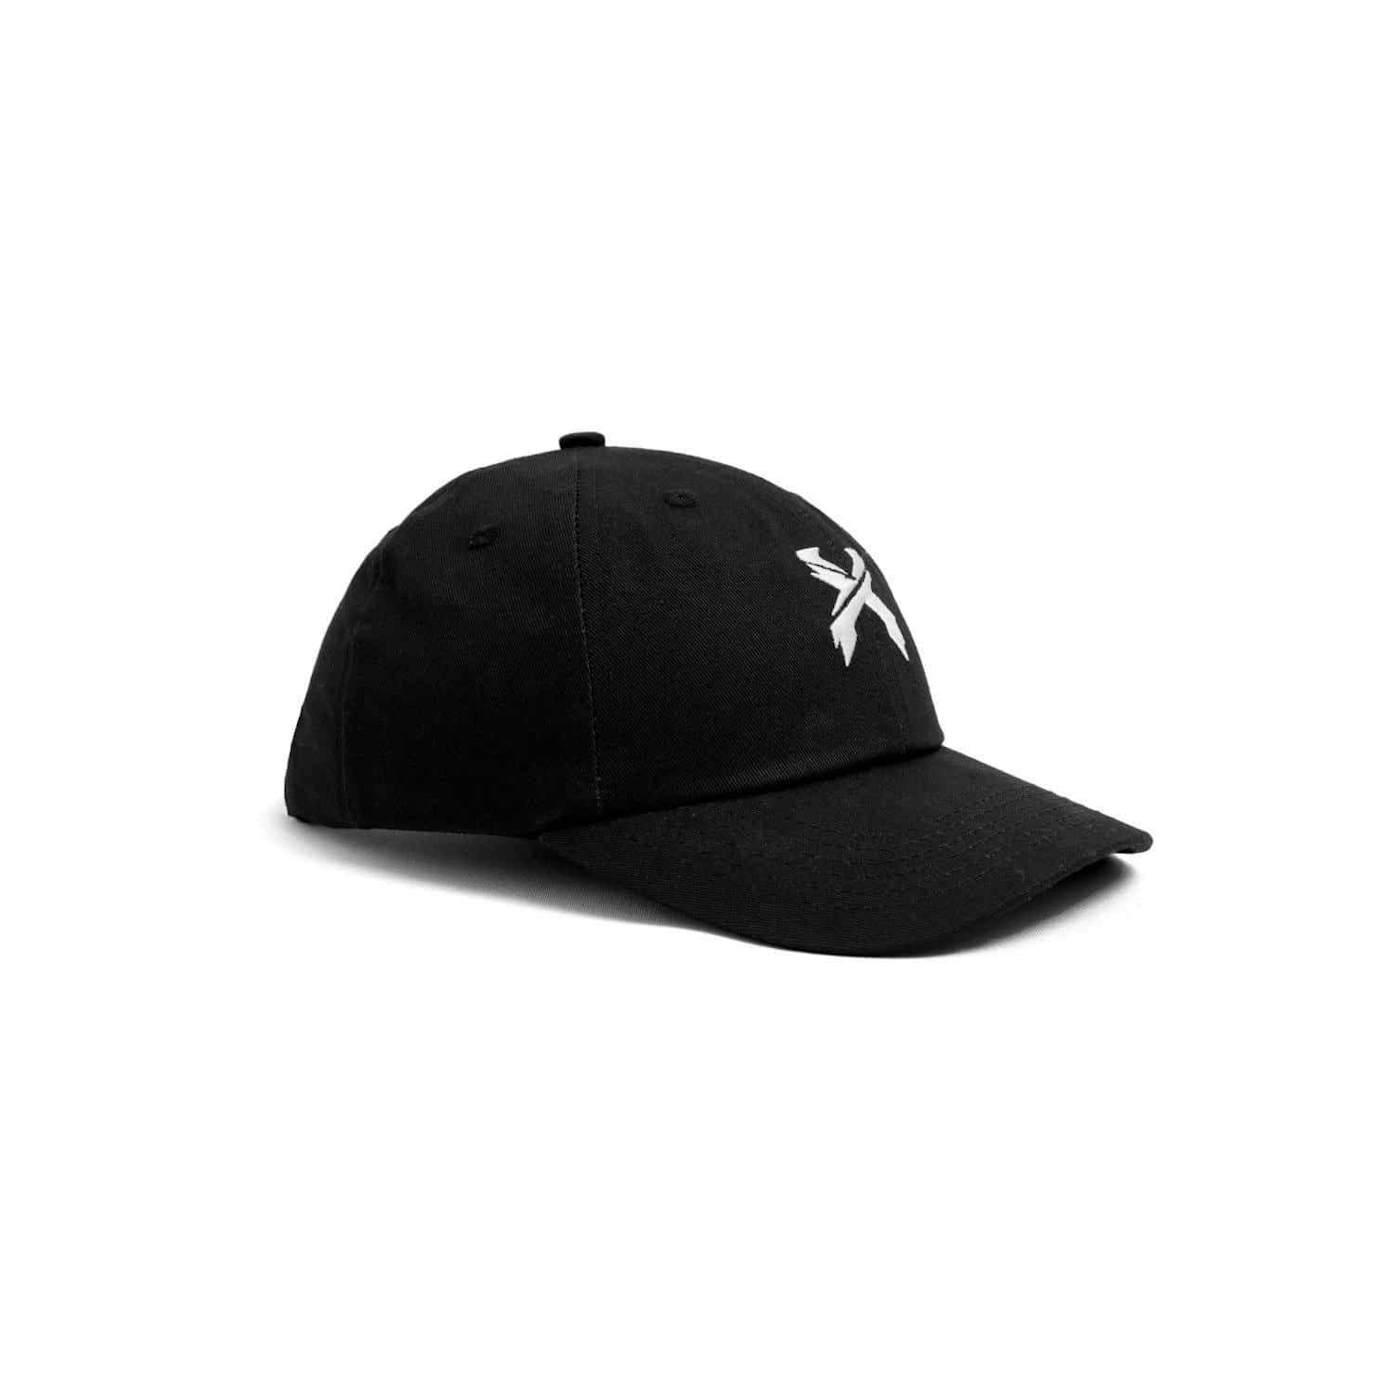 Excision 'Sliced' Logo Dad Hat - Black/White